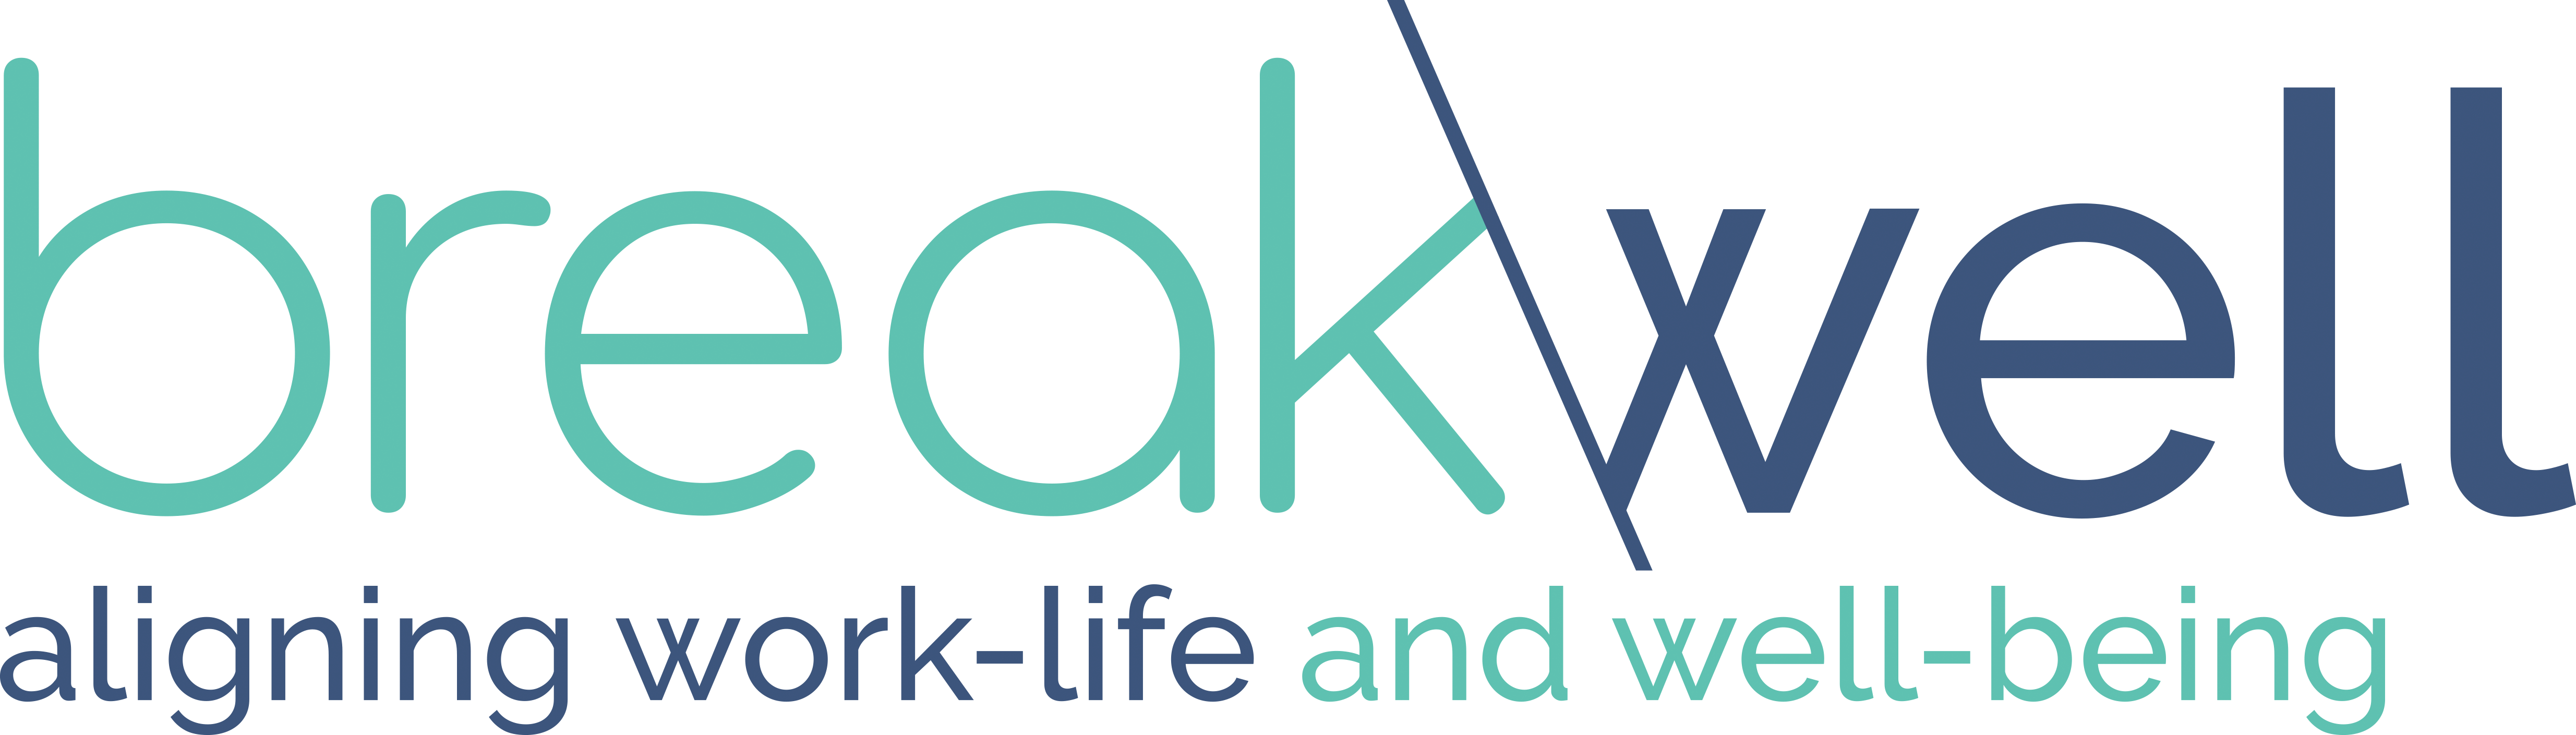 BreakWell logo